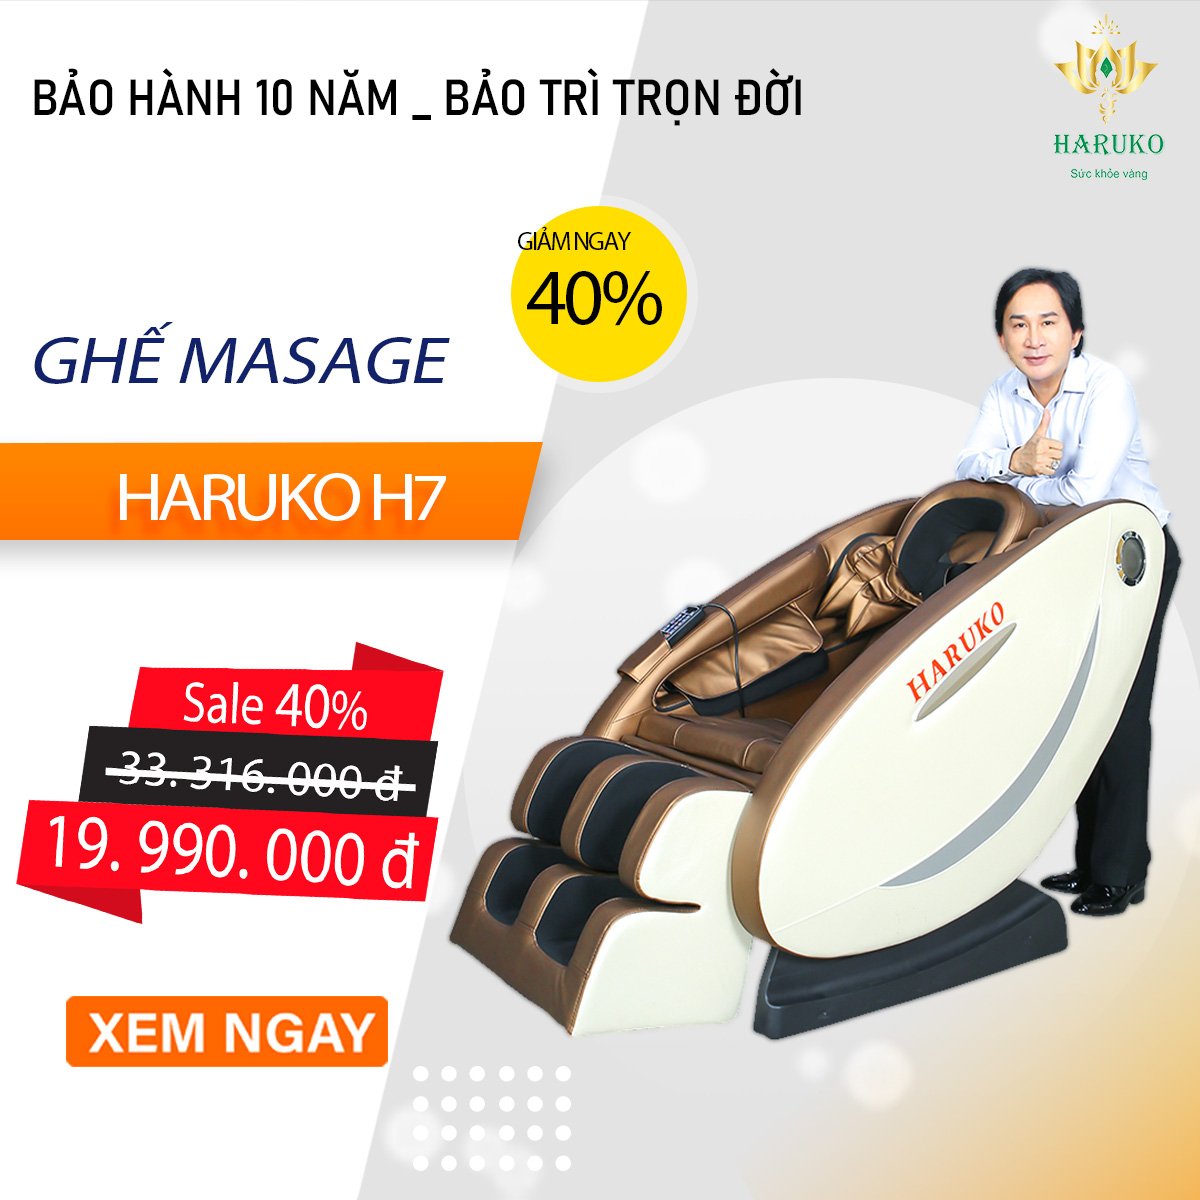 Ghế massage Haruko chỉ với mức giá 20 triệu được bảo hành lên đến 10 năm và bảo trì trọn đời